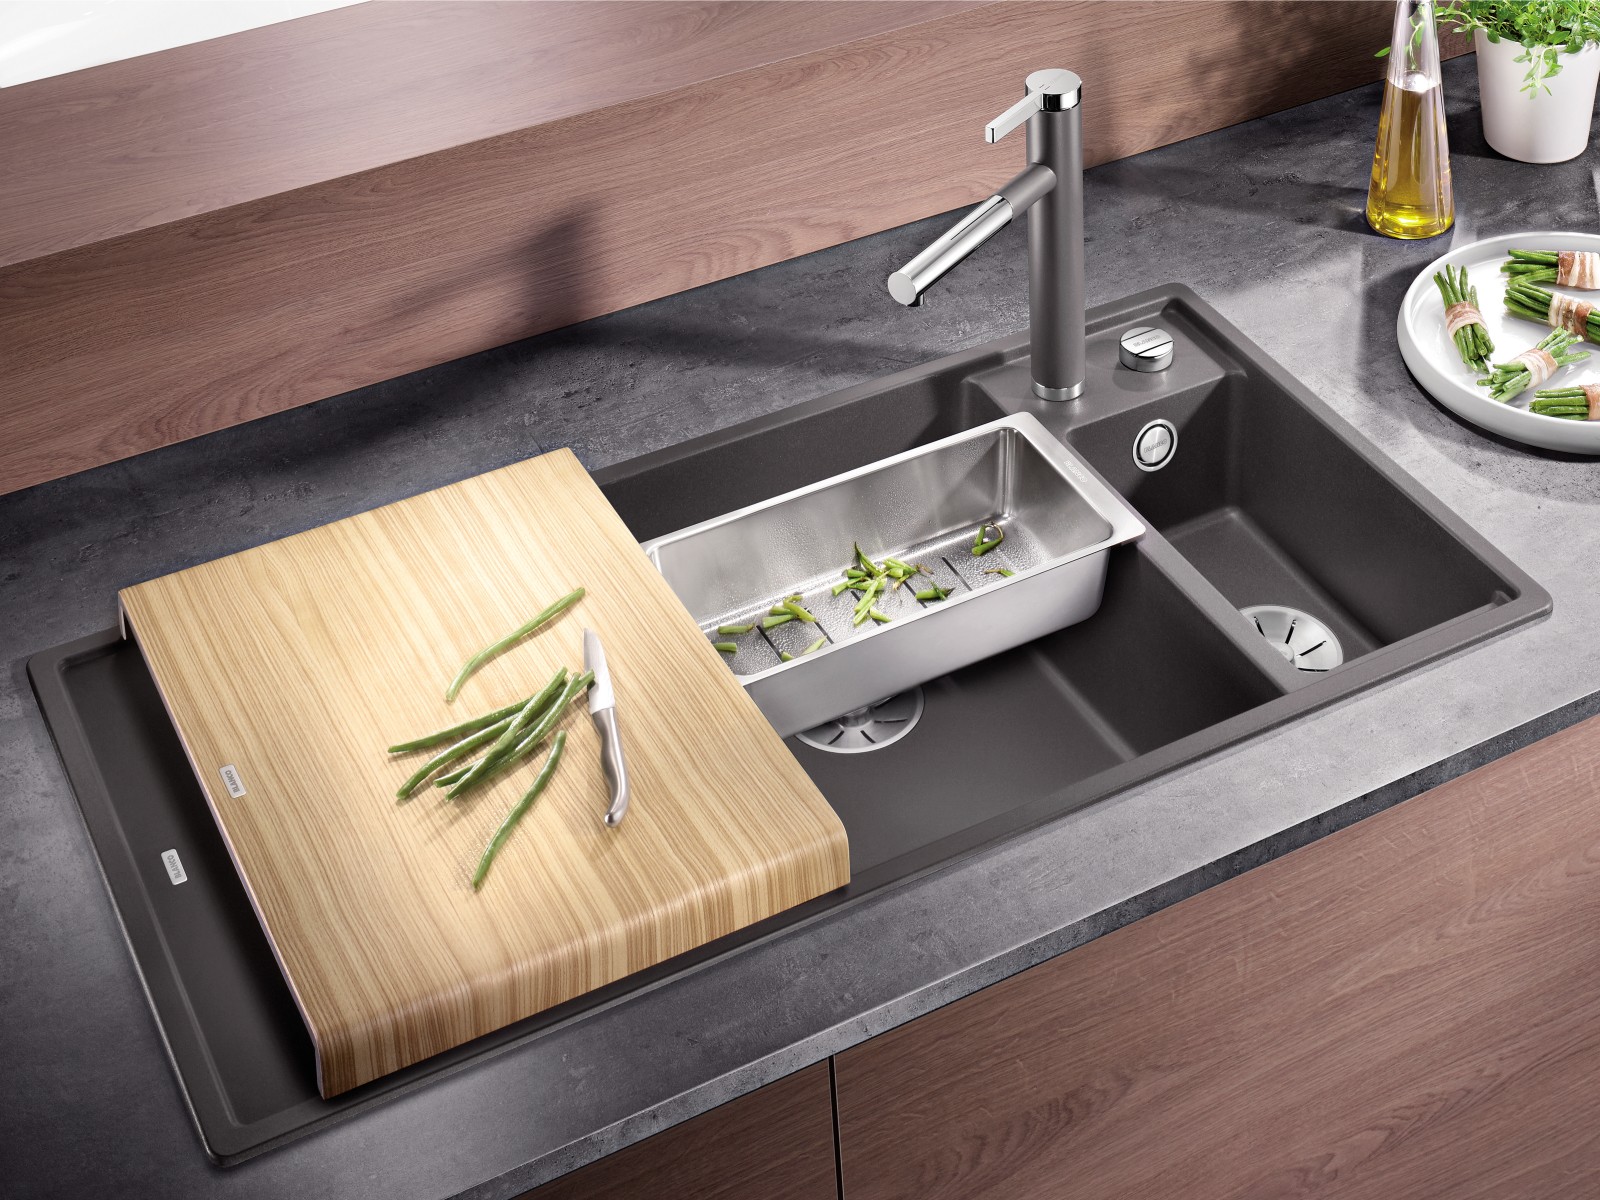 kitchen sink accessories india